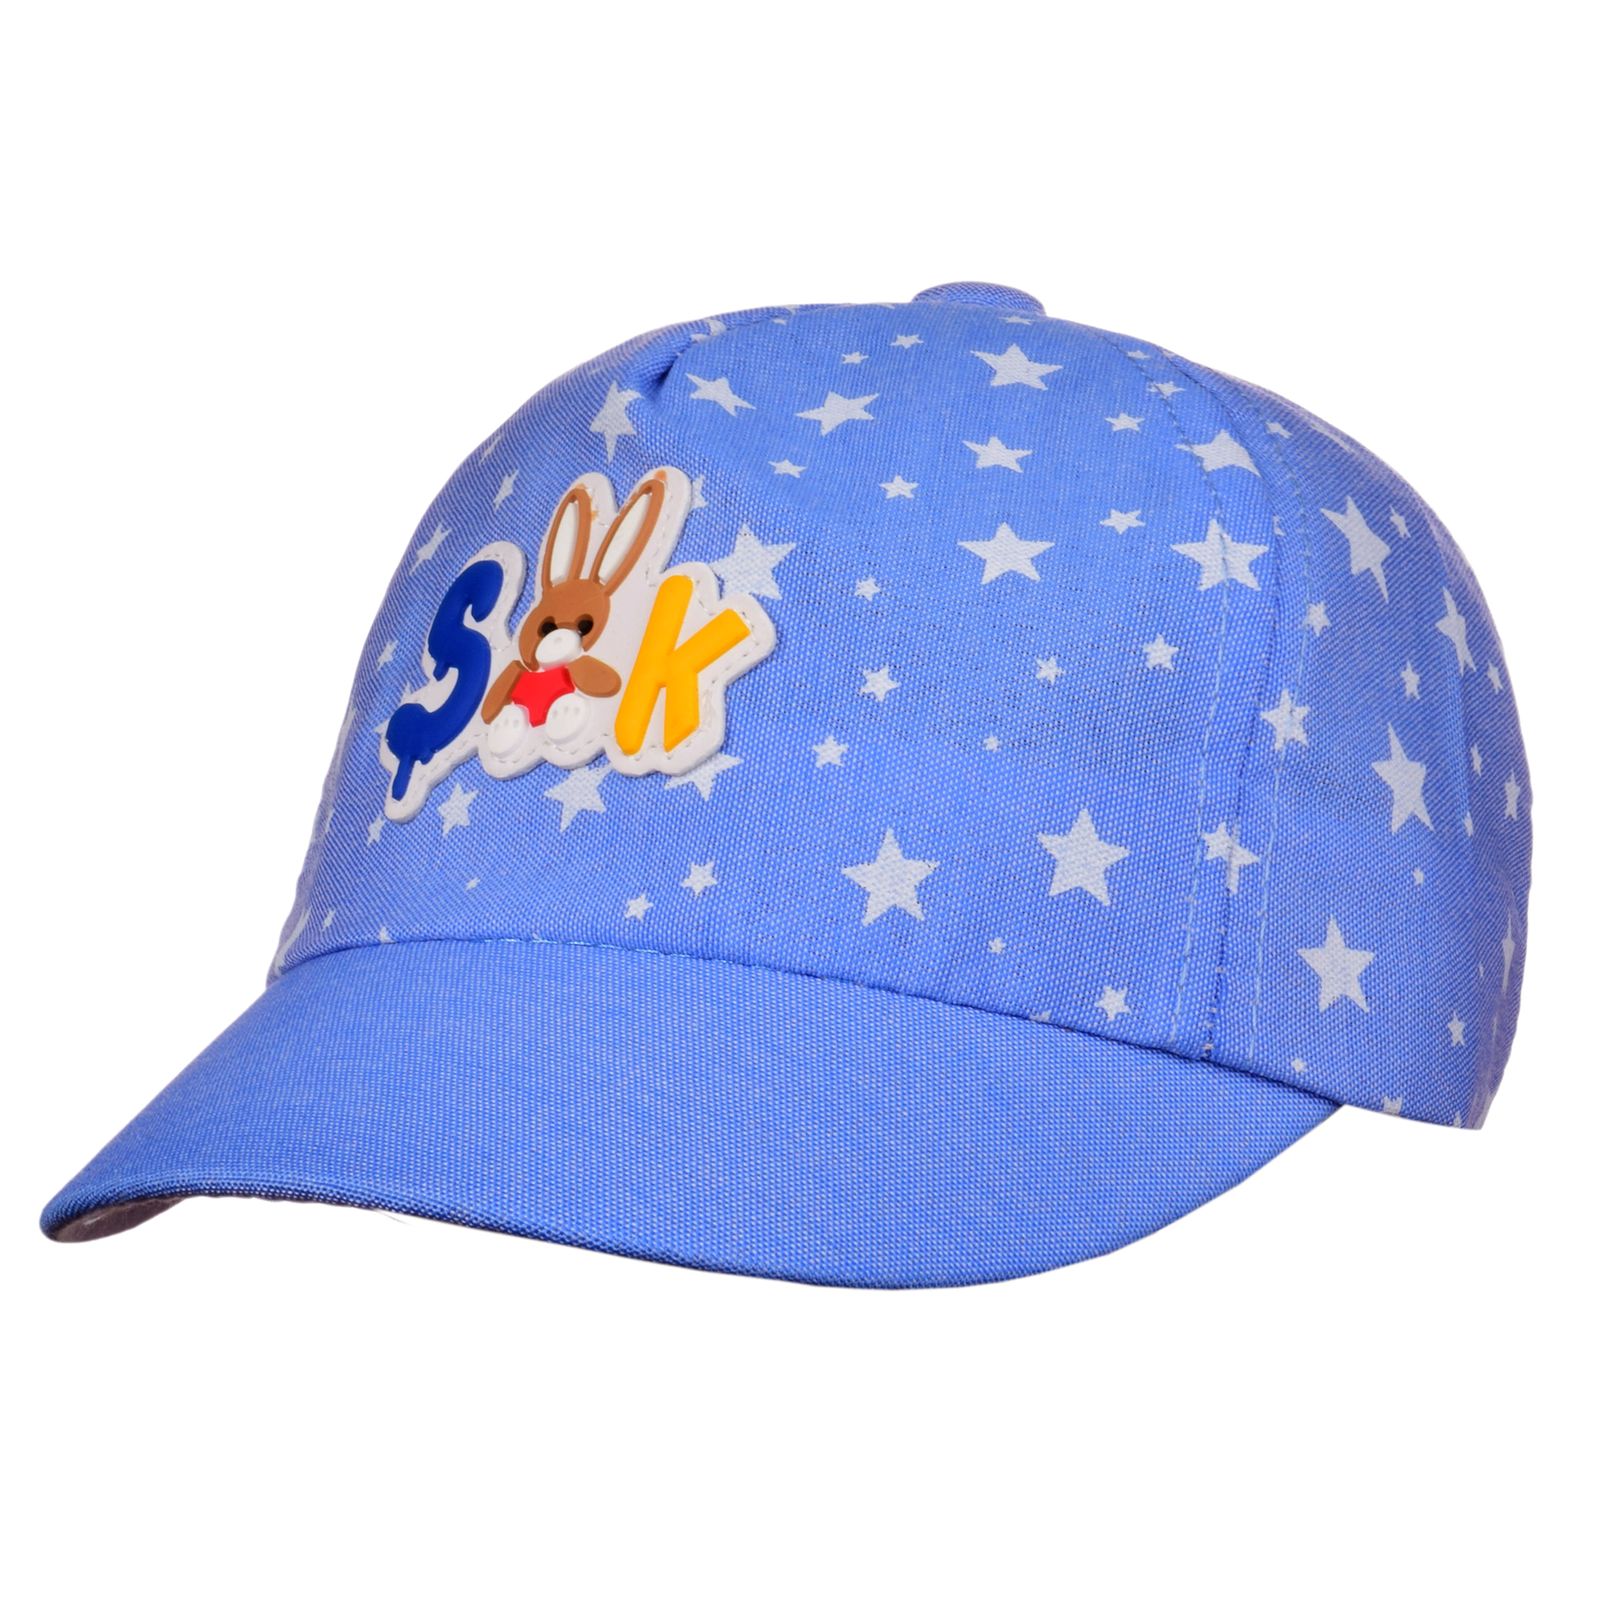 کلاه کپ بچگانه طرح ستاره کد N31273 -  - 1